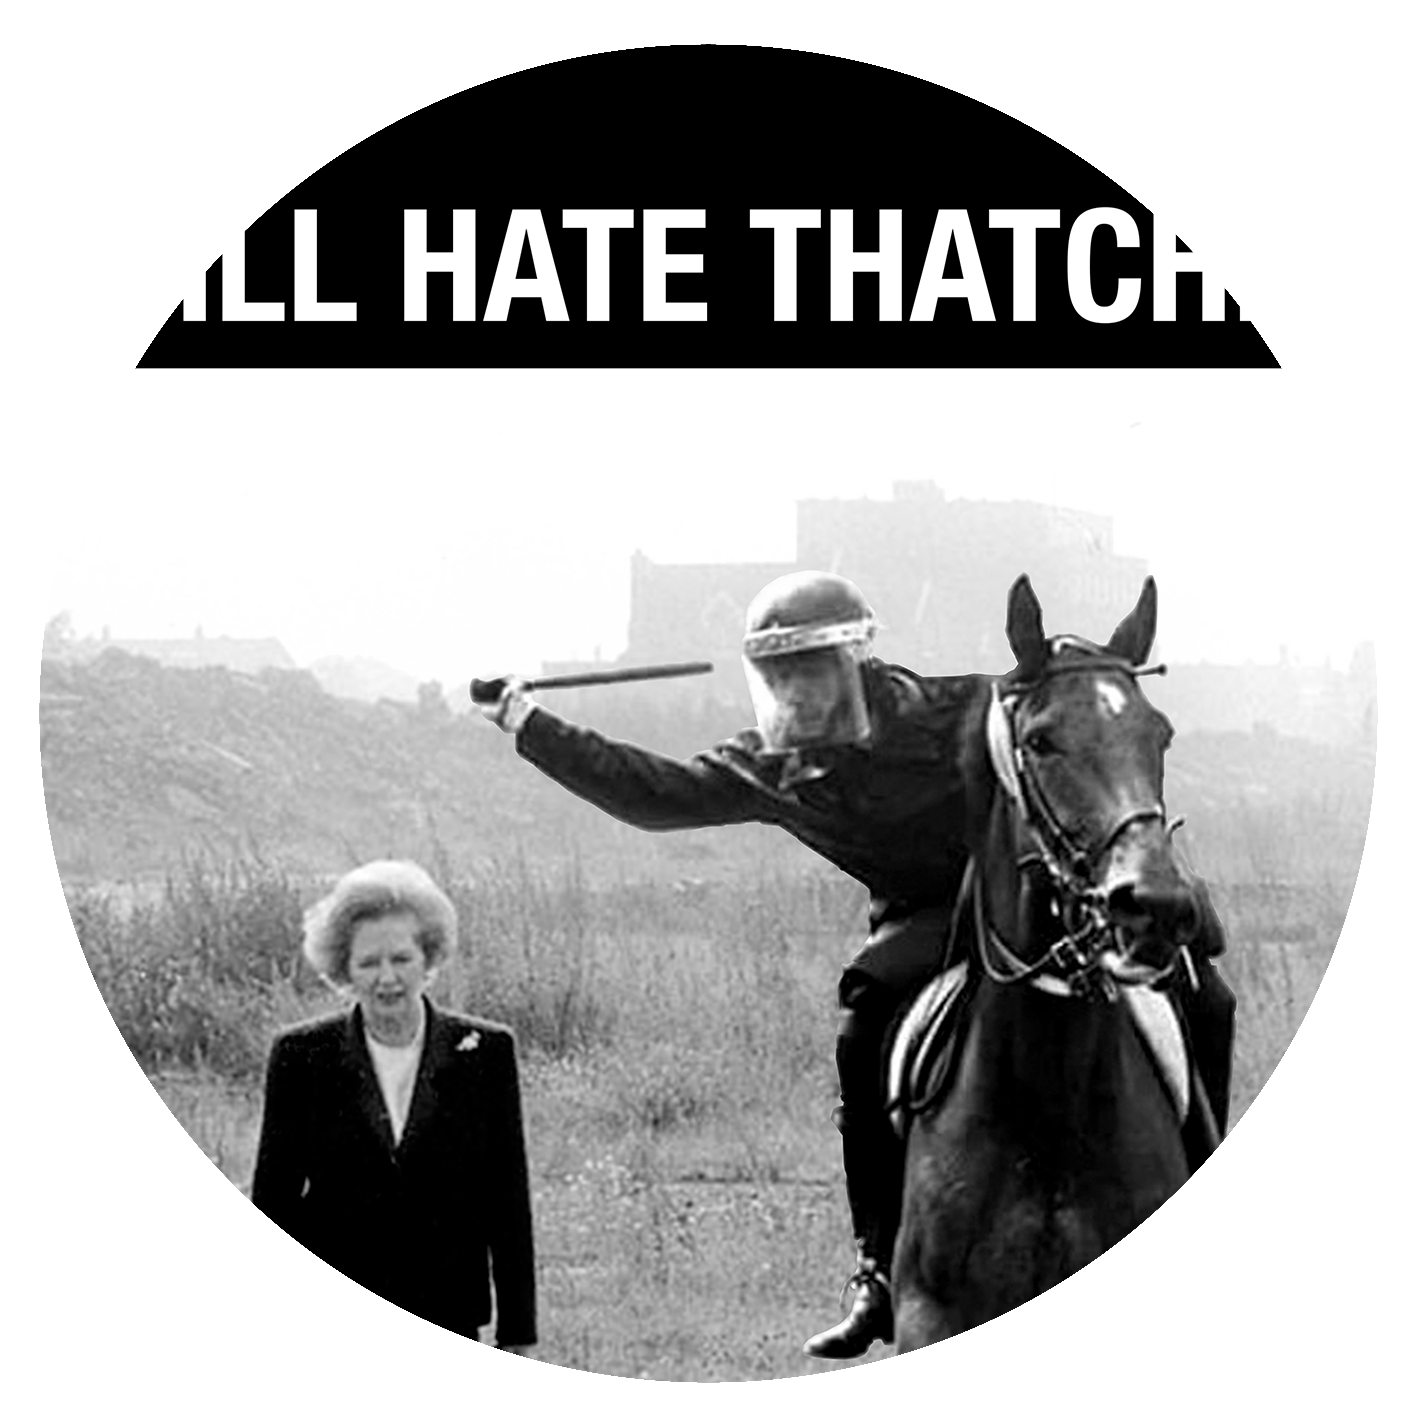 STILL HATE THATCHER - Large Headline Text